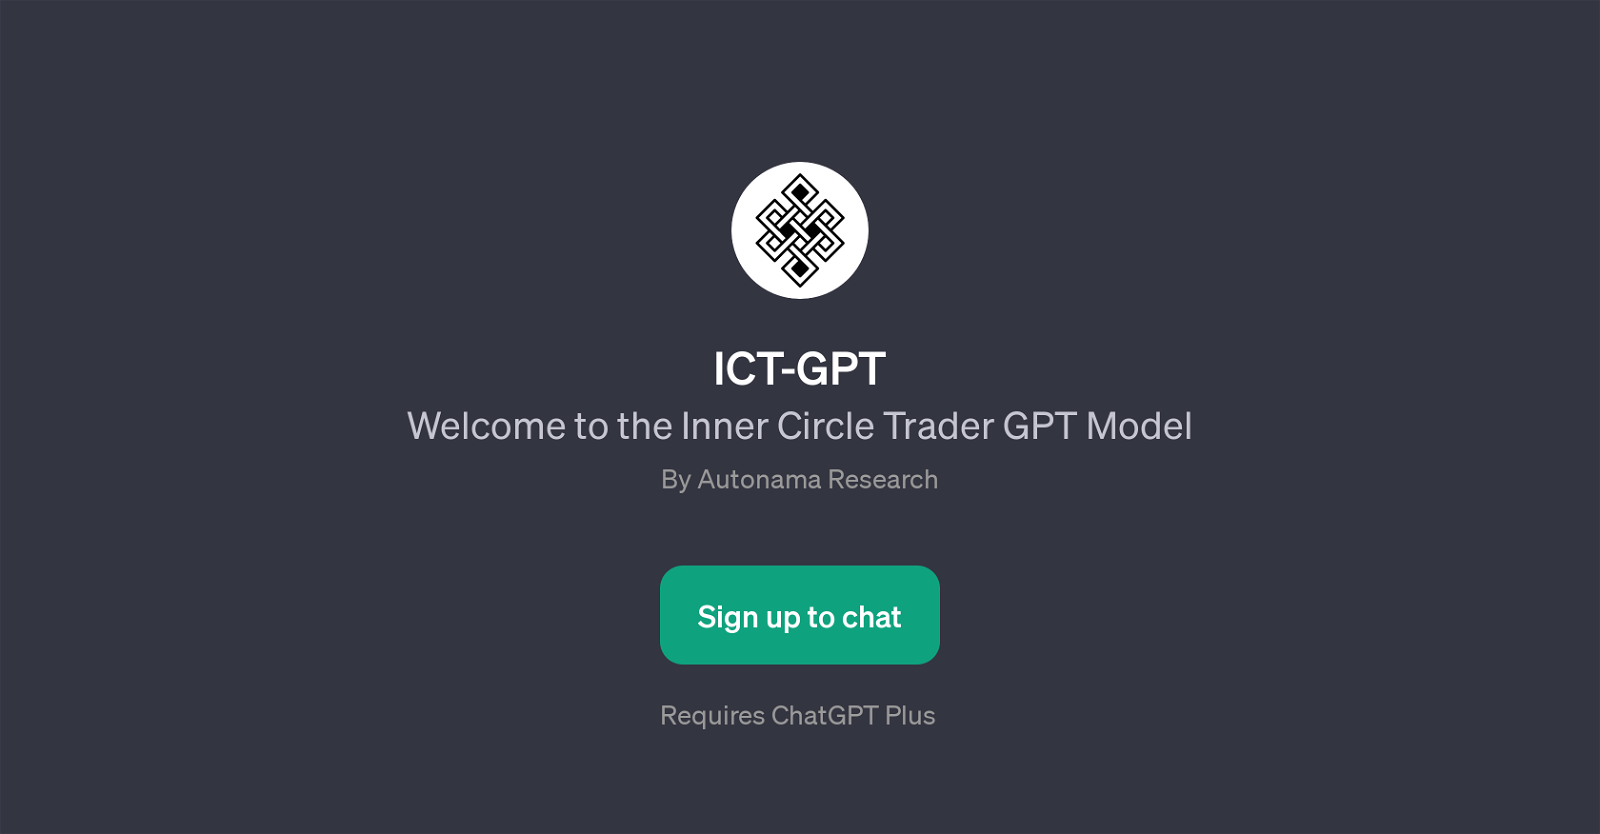 ICT-GPT website